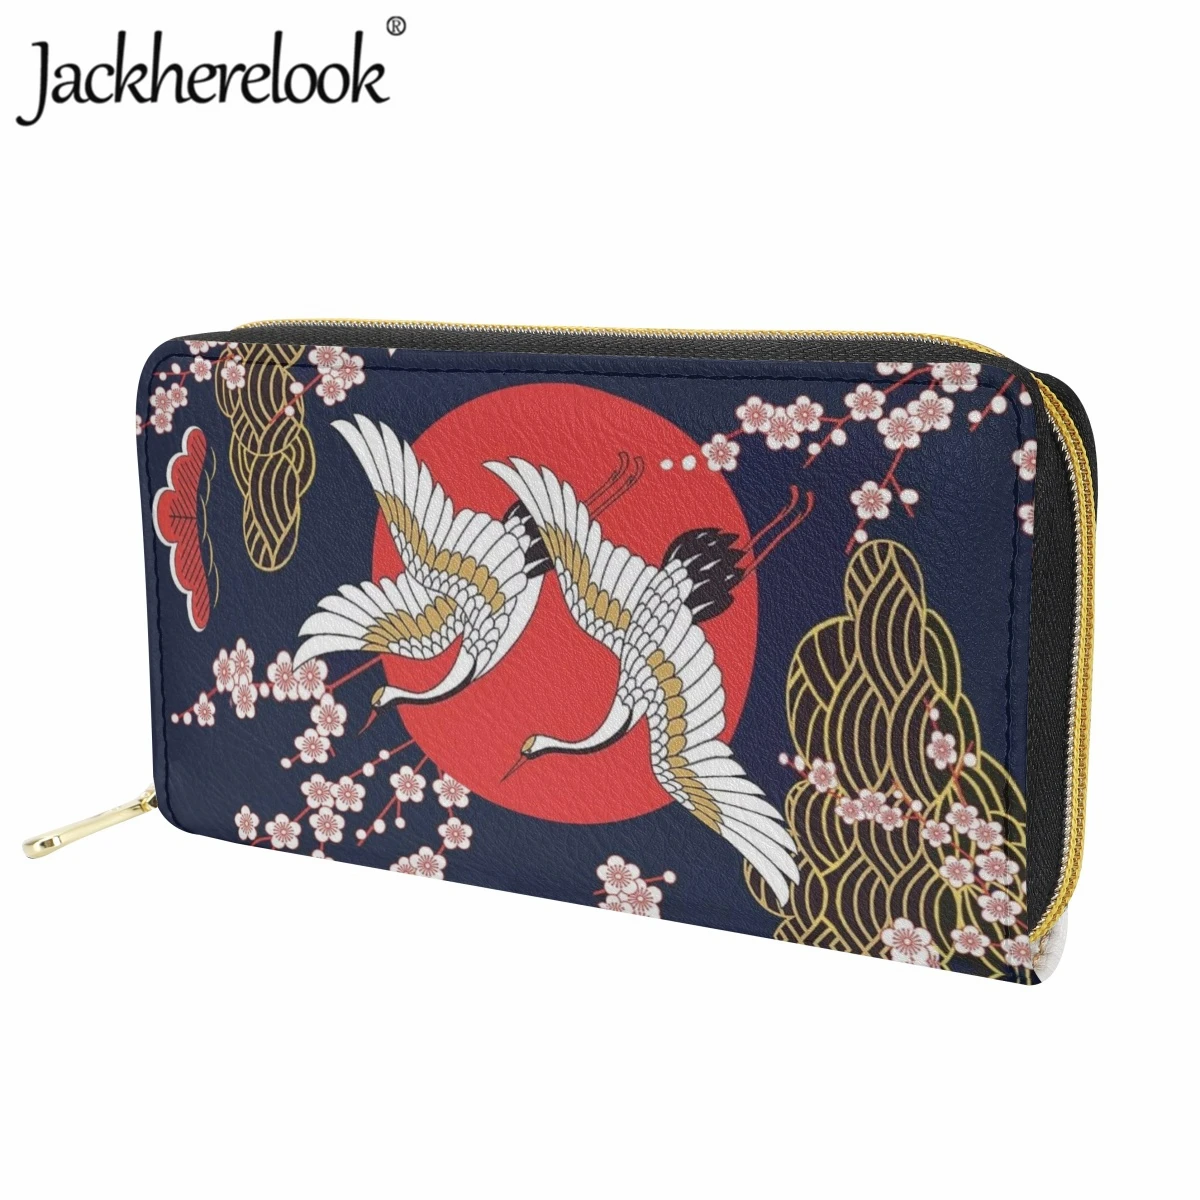 Jackherelook Японский стиль, кошелек с принтом Журавля и животных, женский модный Ретро-женский кожаный роскошный кошелек, держатель для банковских карт - 2